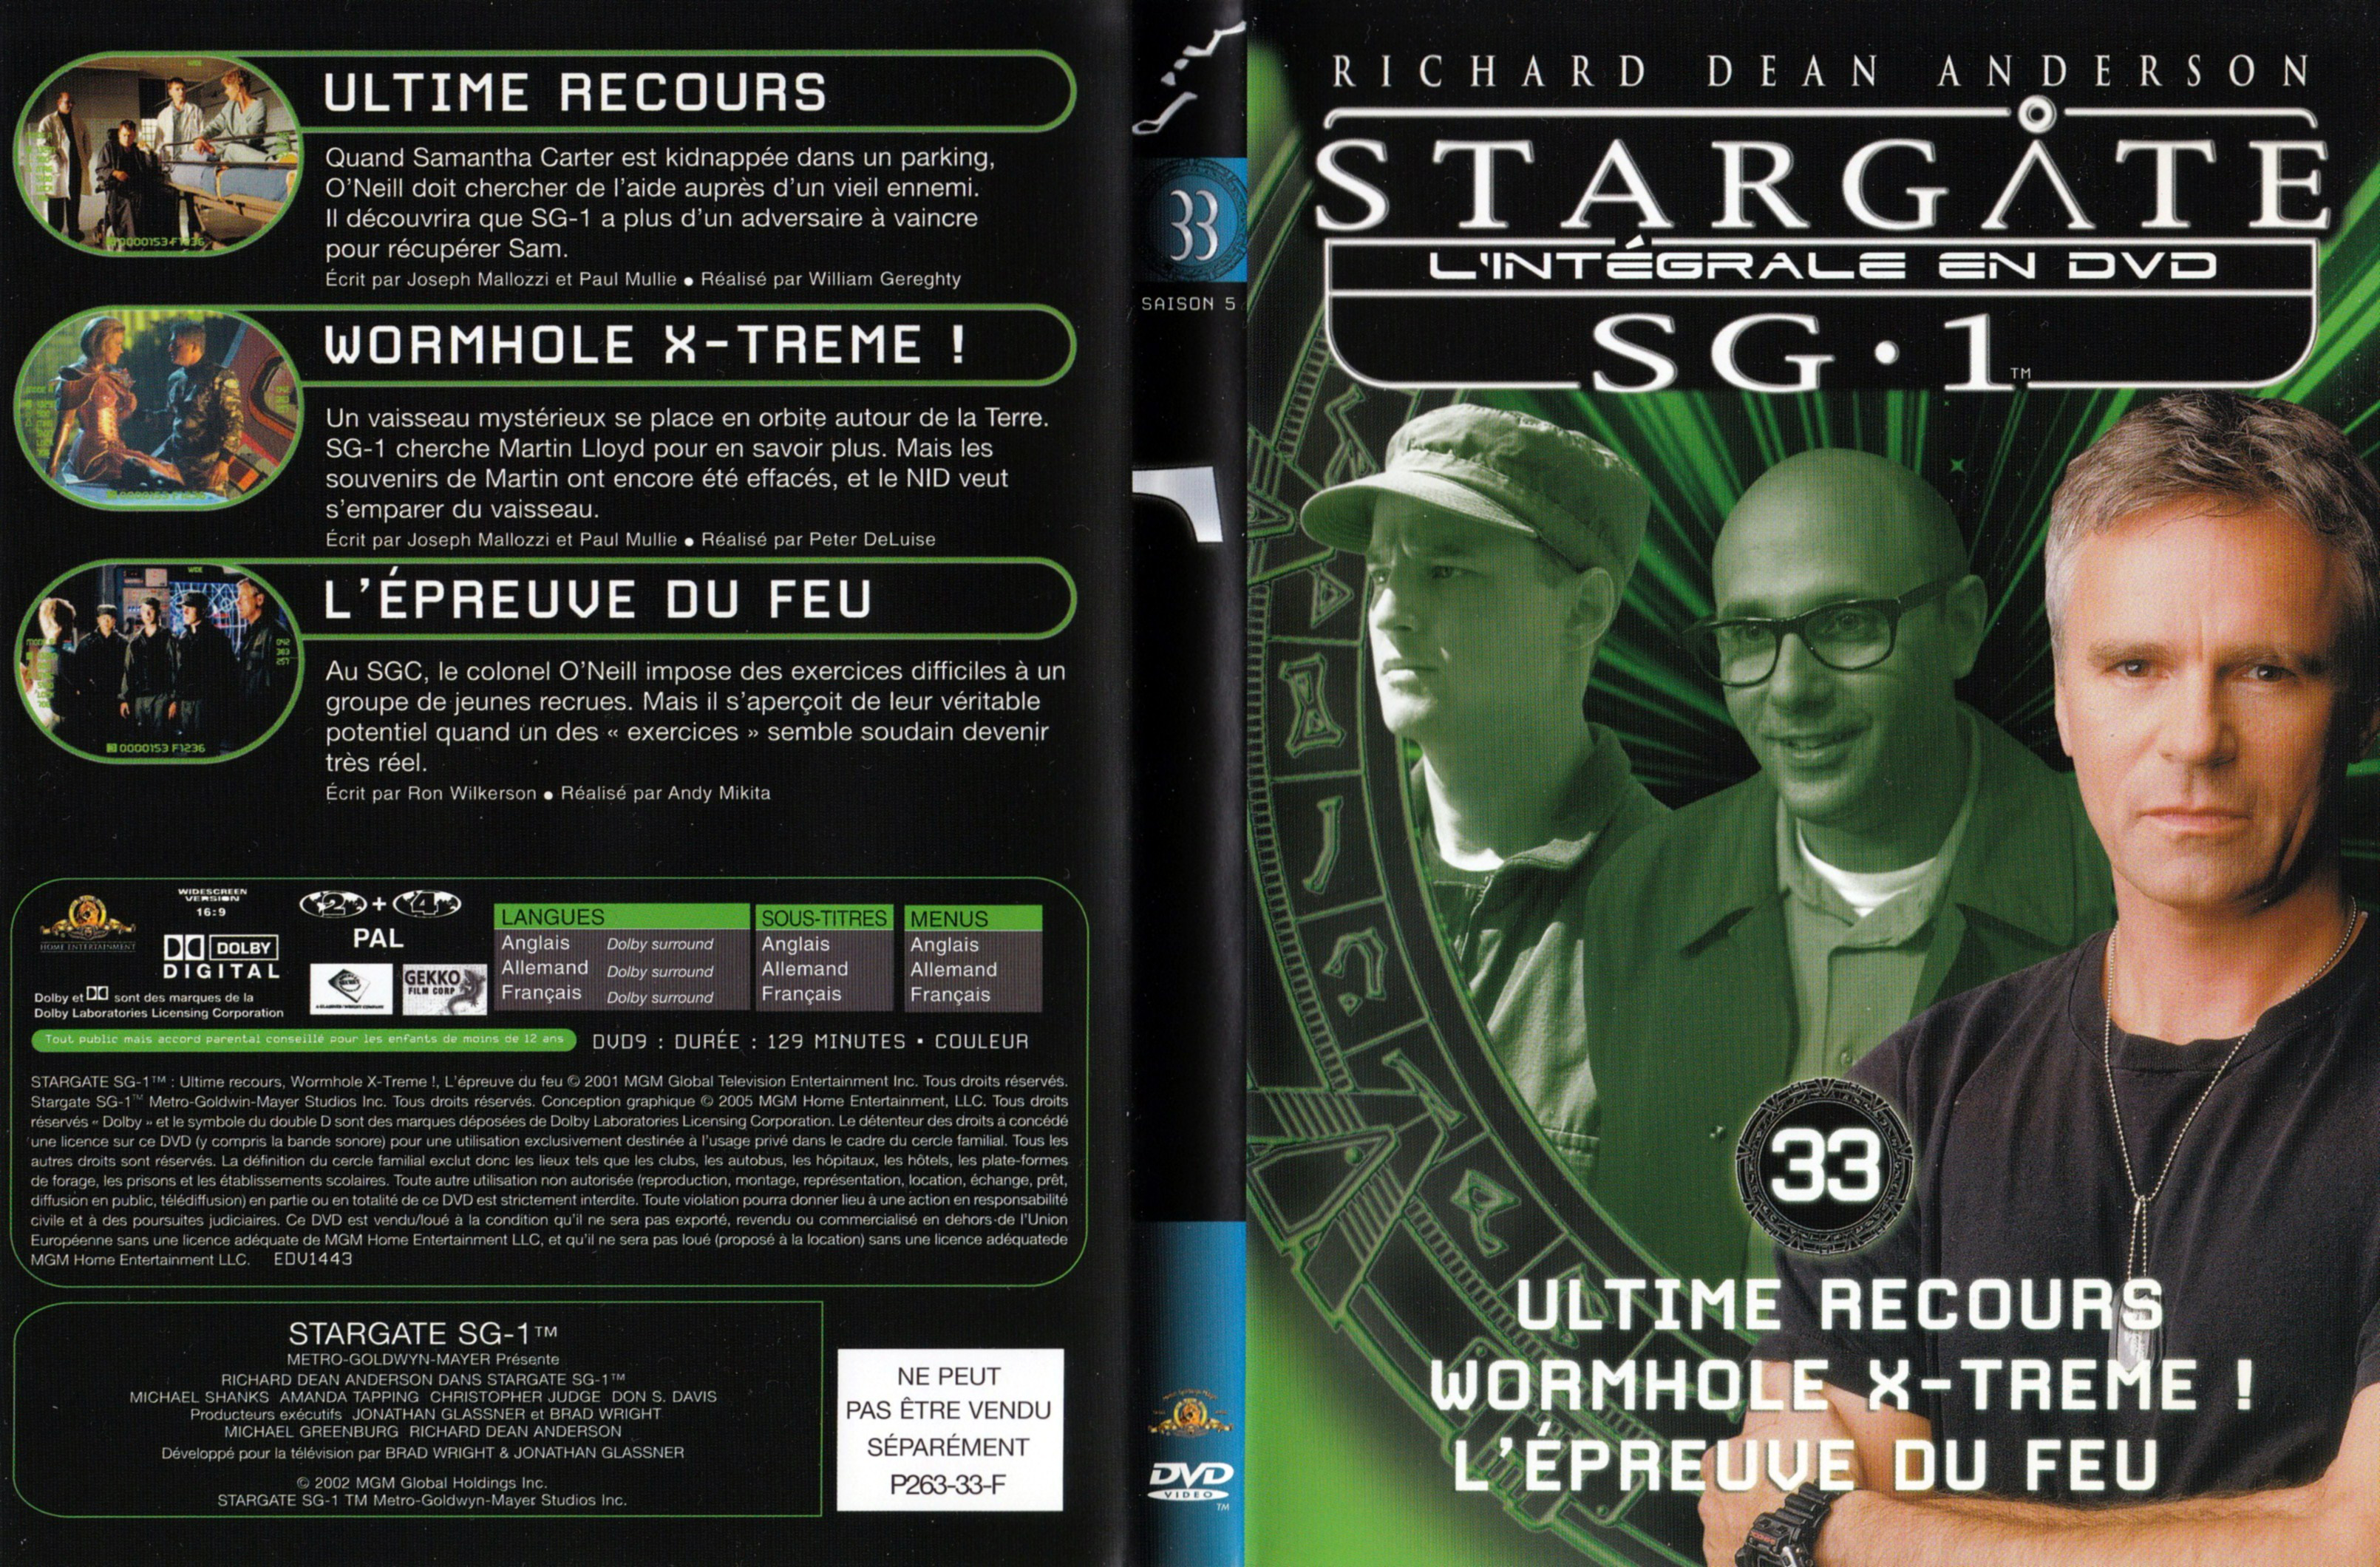 Jaquette DVD Stargate SG1 Intgrale Saison 5 vol 33